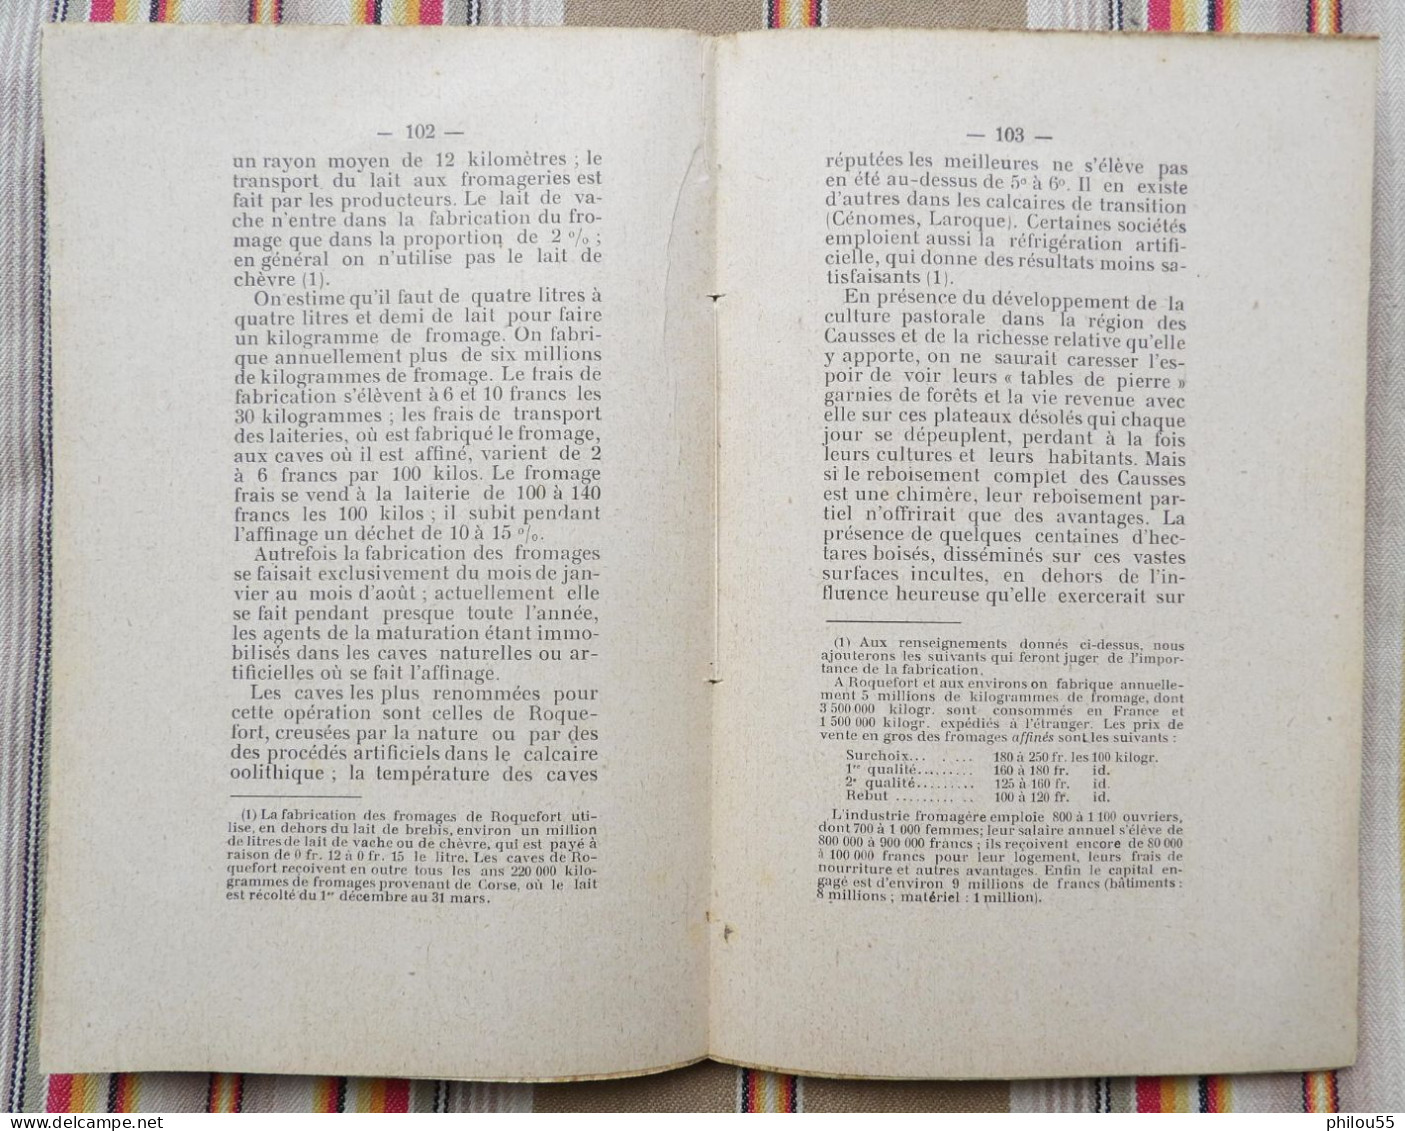 12 AVEYRON 1905 Regime des Cours d'Eau du Departement et Question de Reboisement par P. BUFFAULT